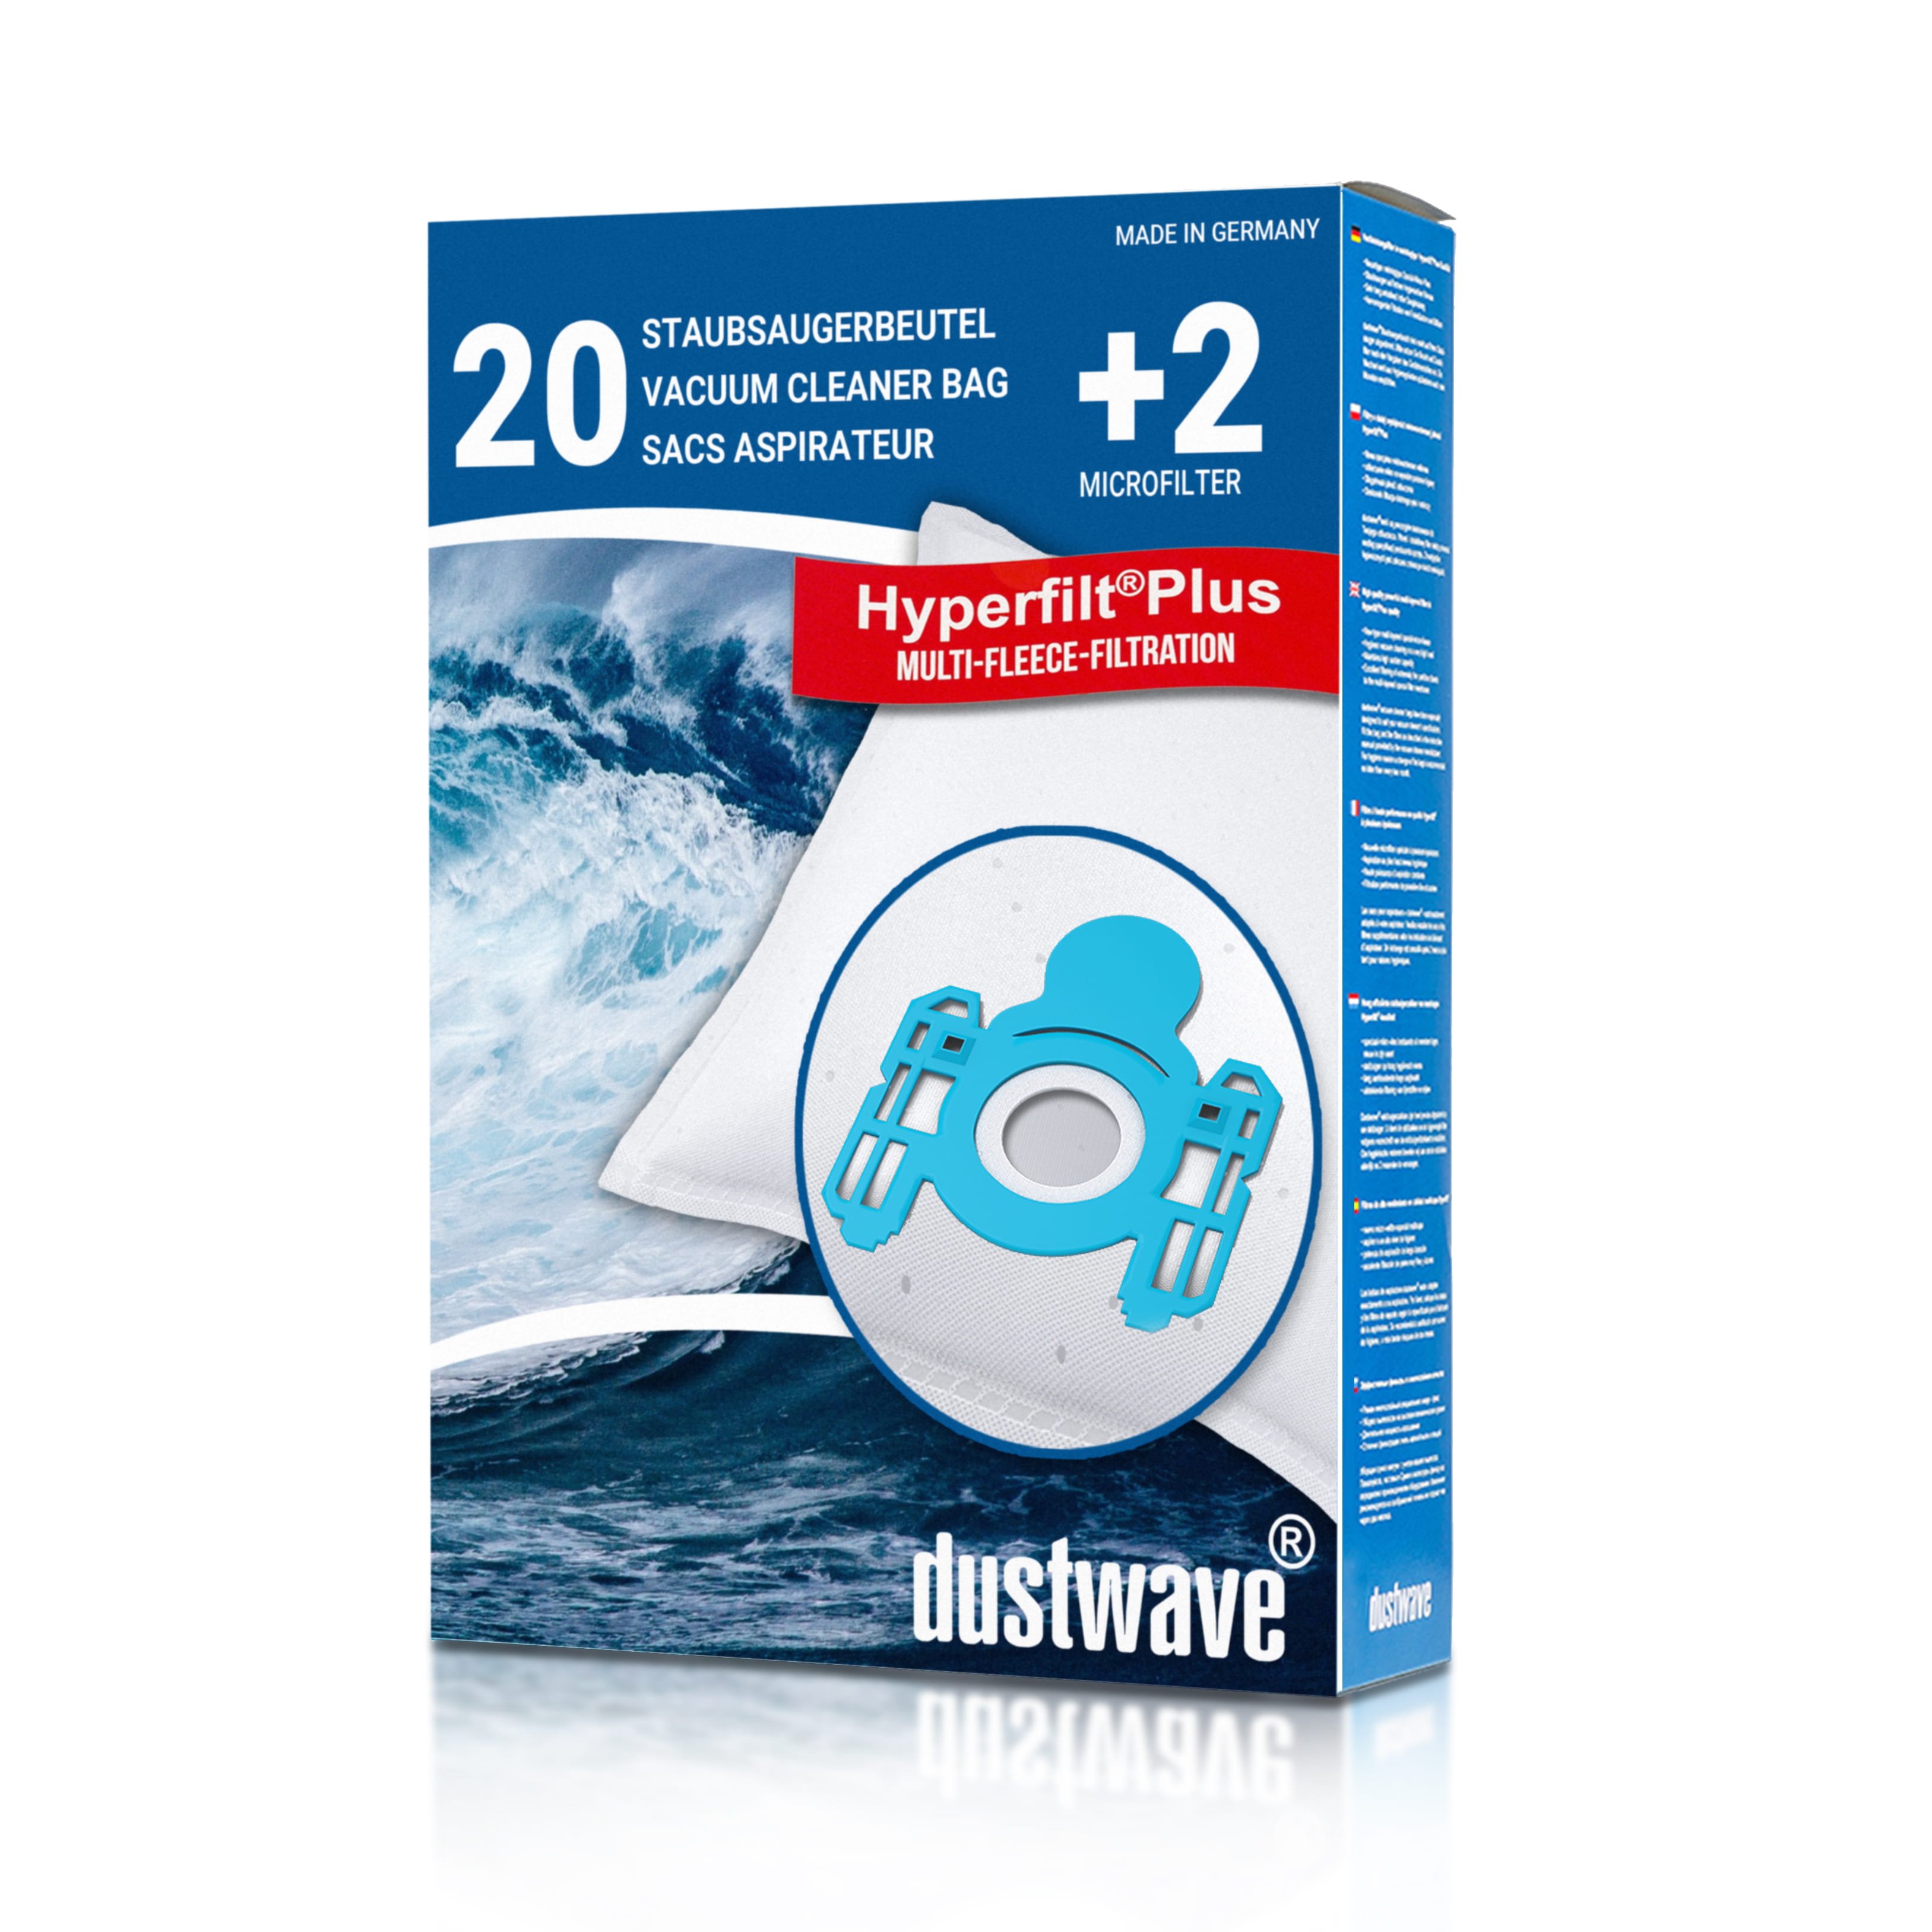 Dustwave® 20 Staubsaugerbeutel für AEG Exquisit 500 Vampyr - hocheffizient, mehrlagiges Mikrovlies mit Hygieneverschluss - Made in Germany